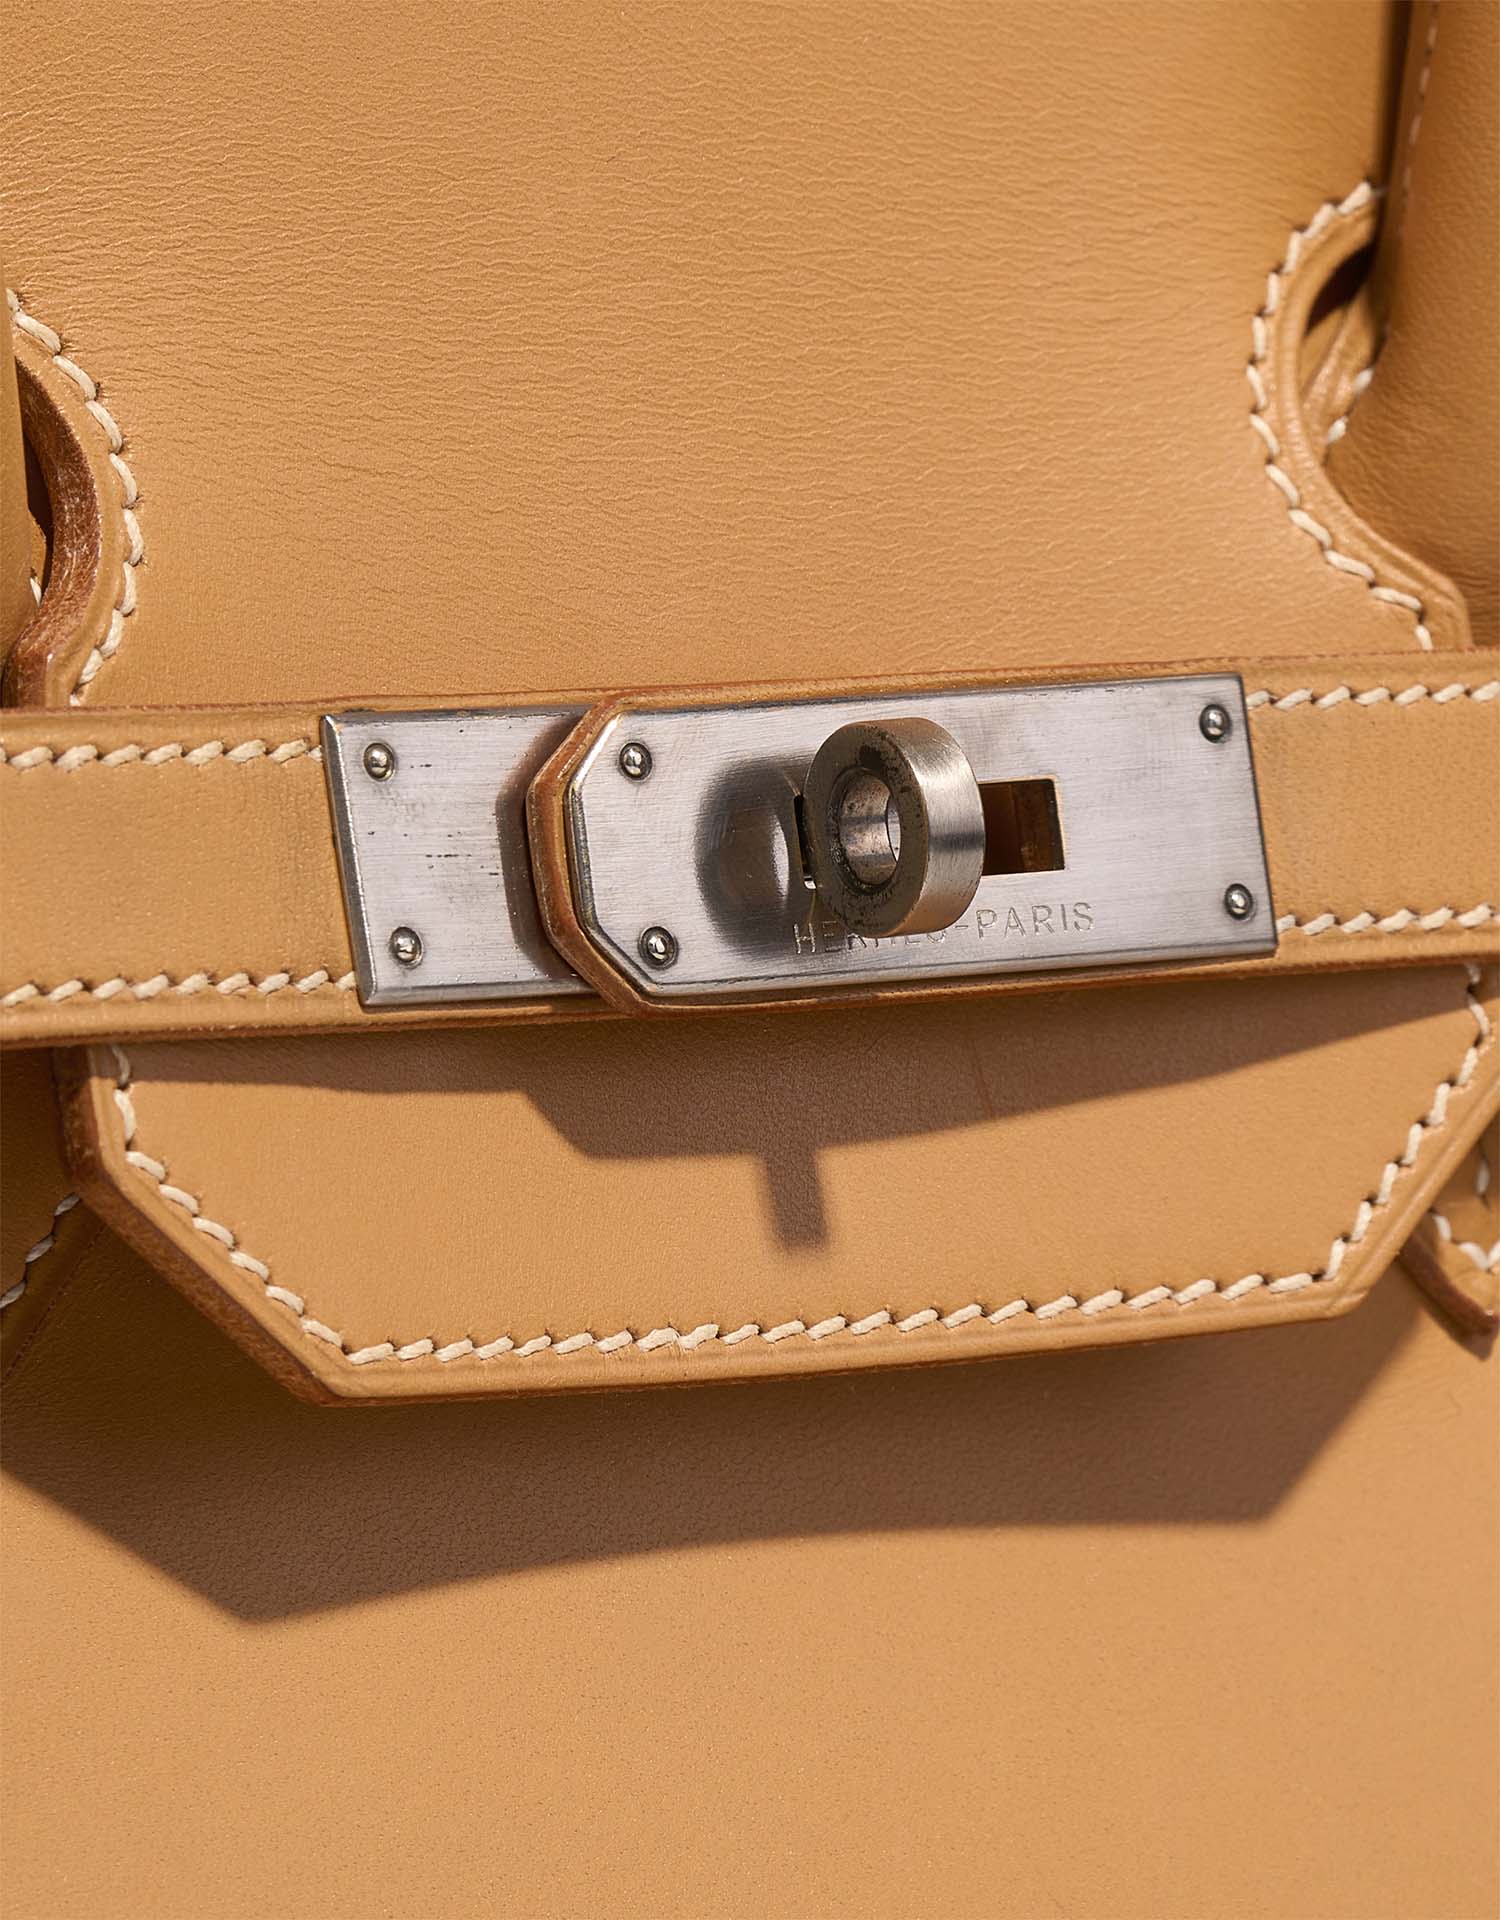 Hermès Birkin 35 Naturel Verschluss-System | Verkaufen Sie Ihre Designer-Tasche auf Saclab.com